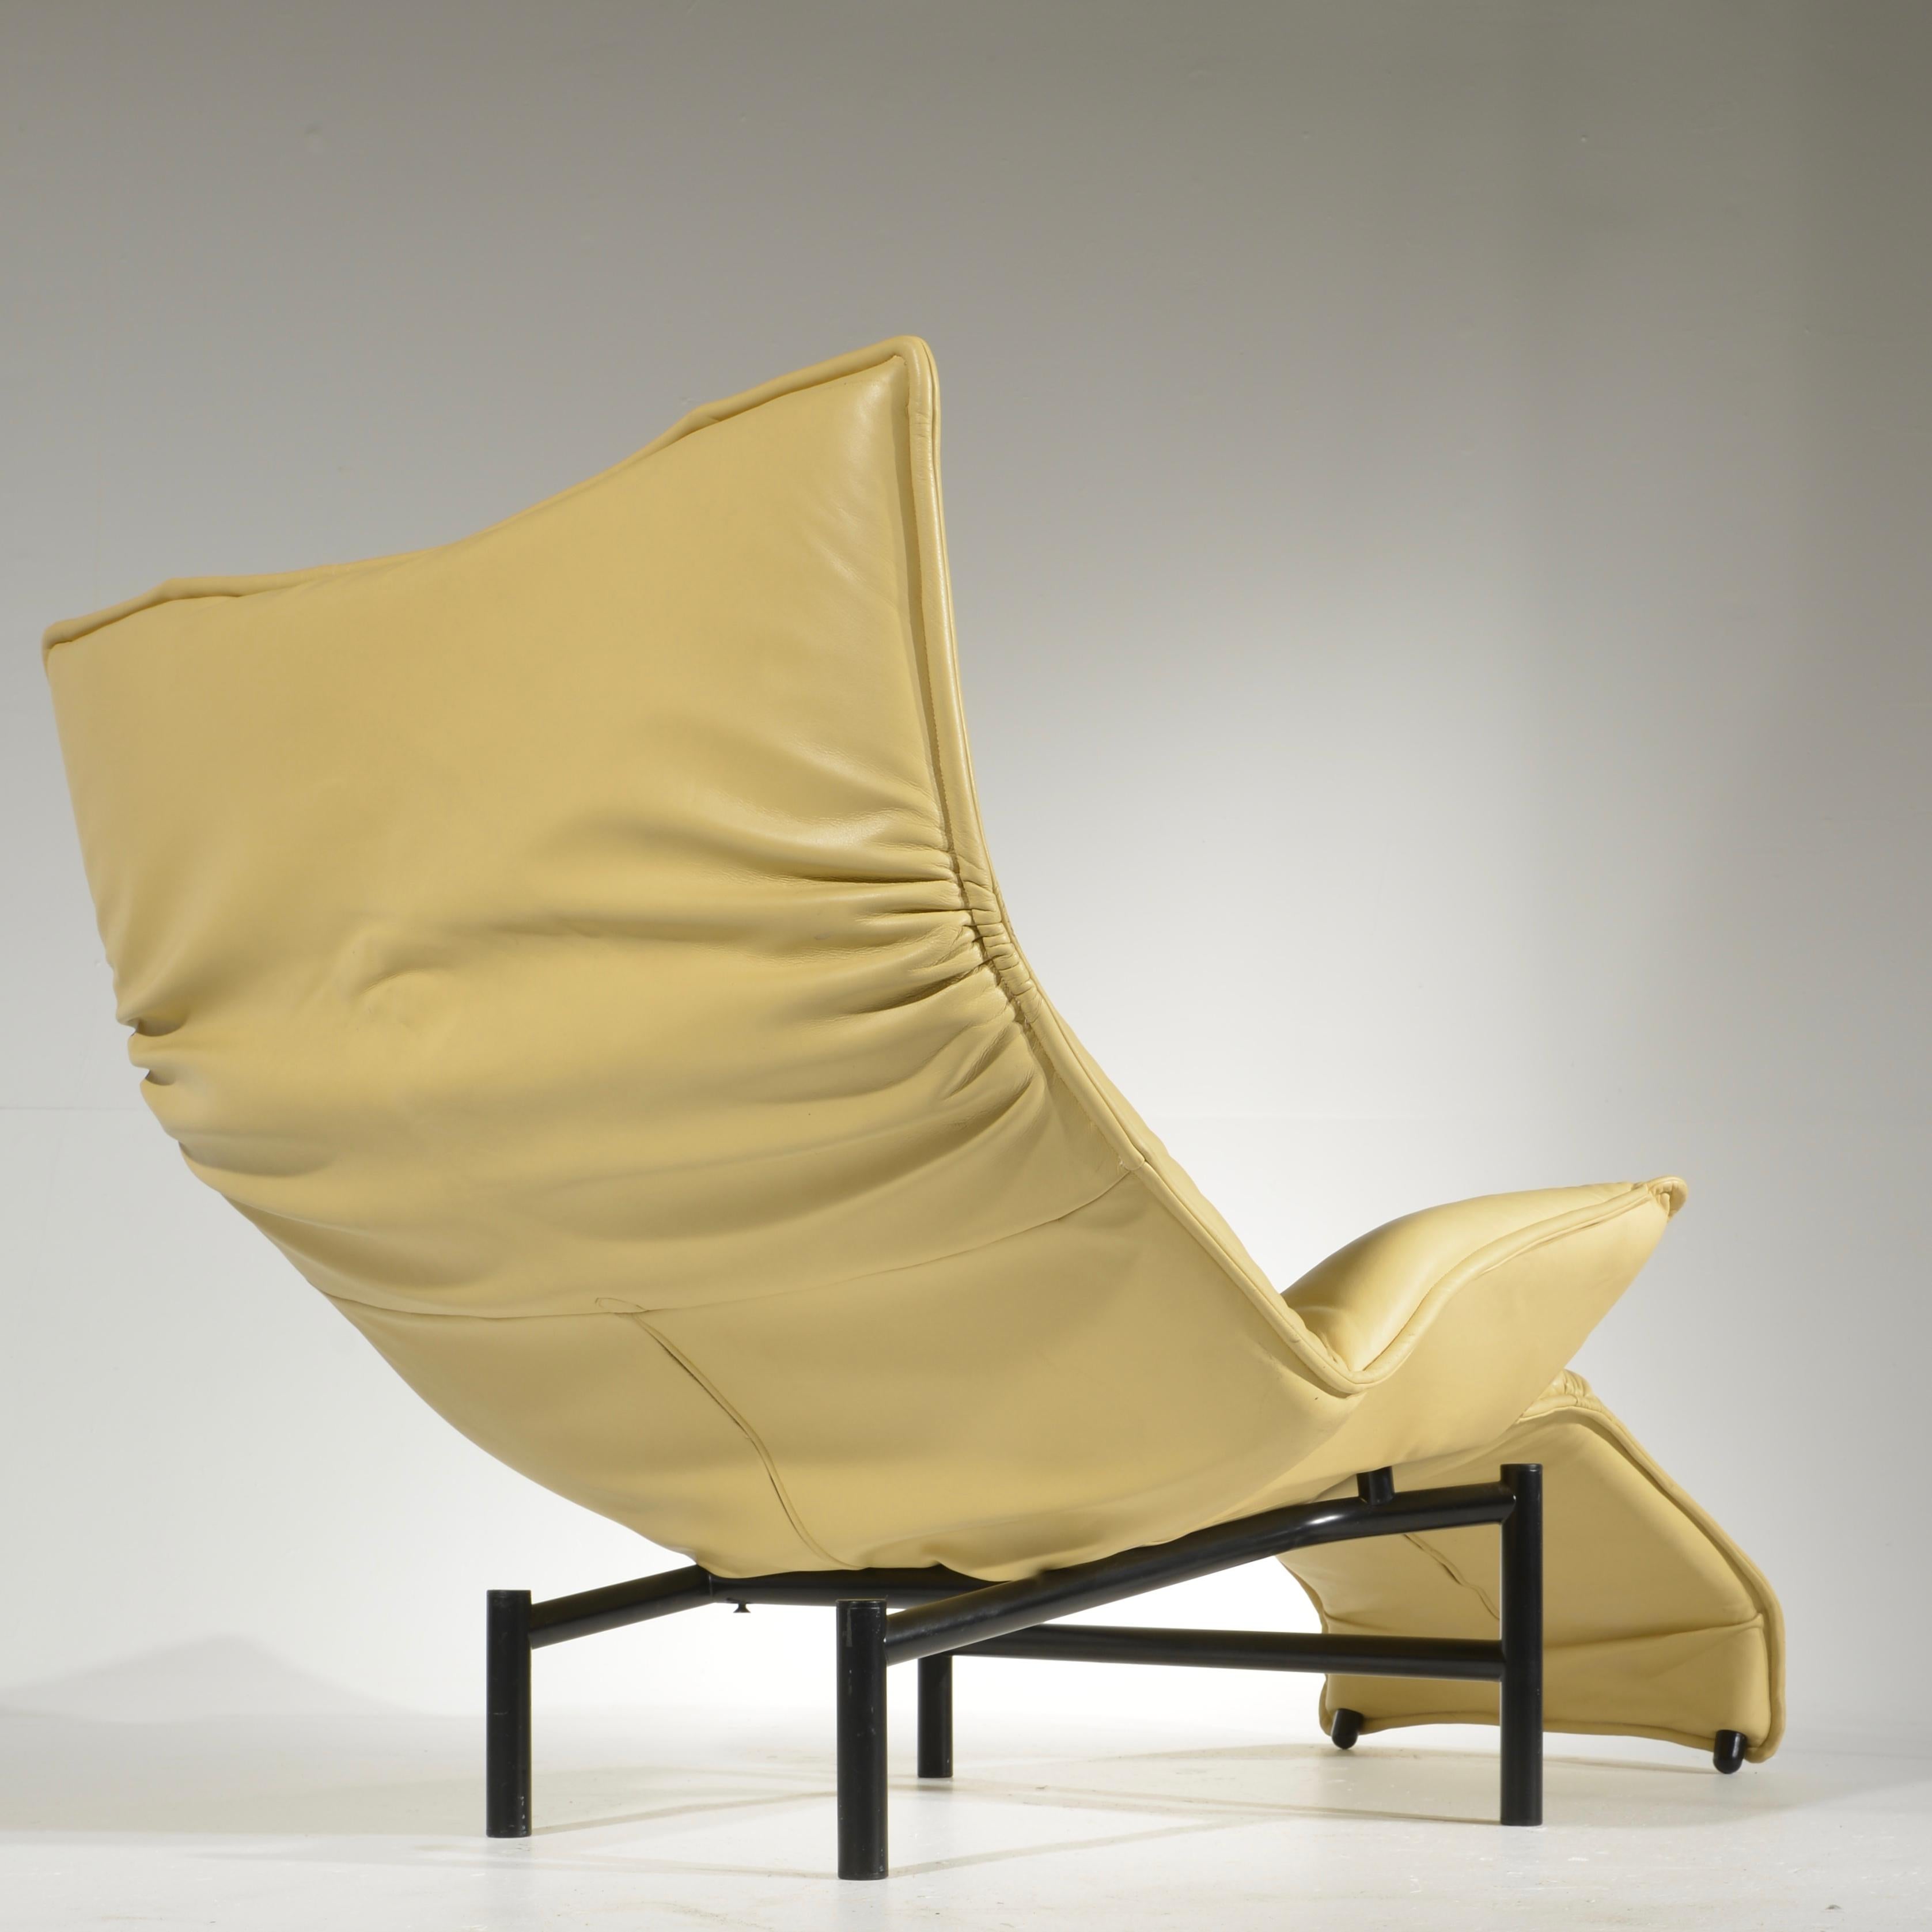 Veranda Lounge Chair by Vico Magistretti for Cassina 2